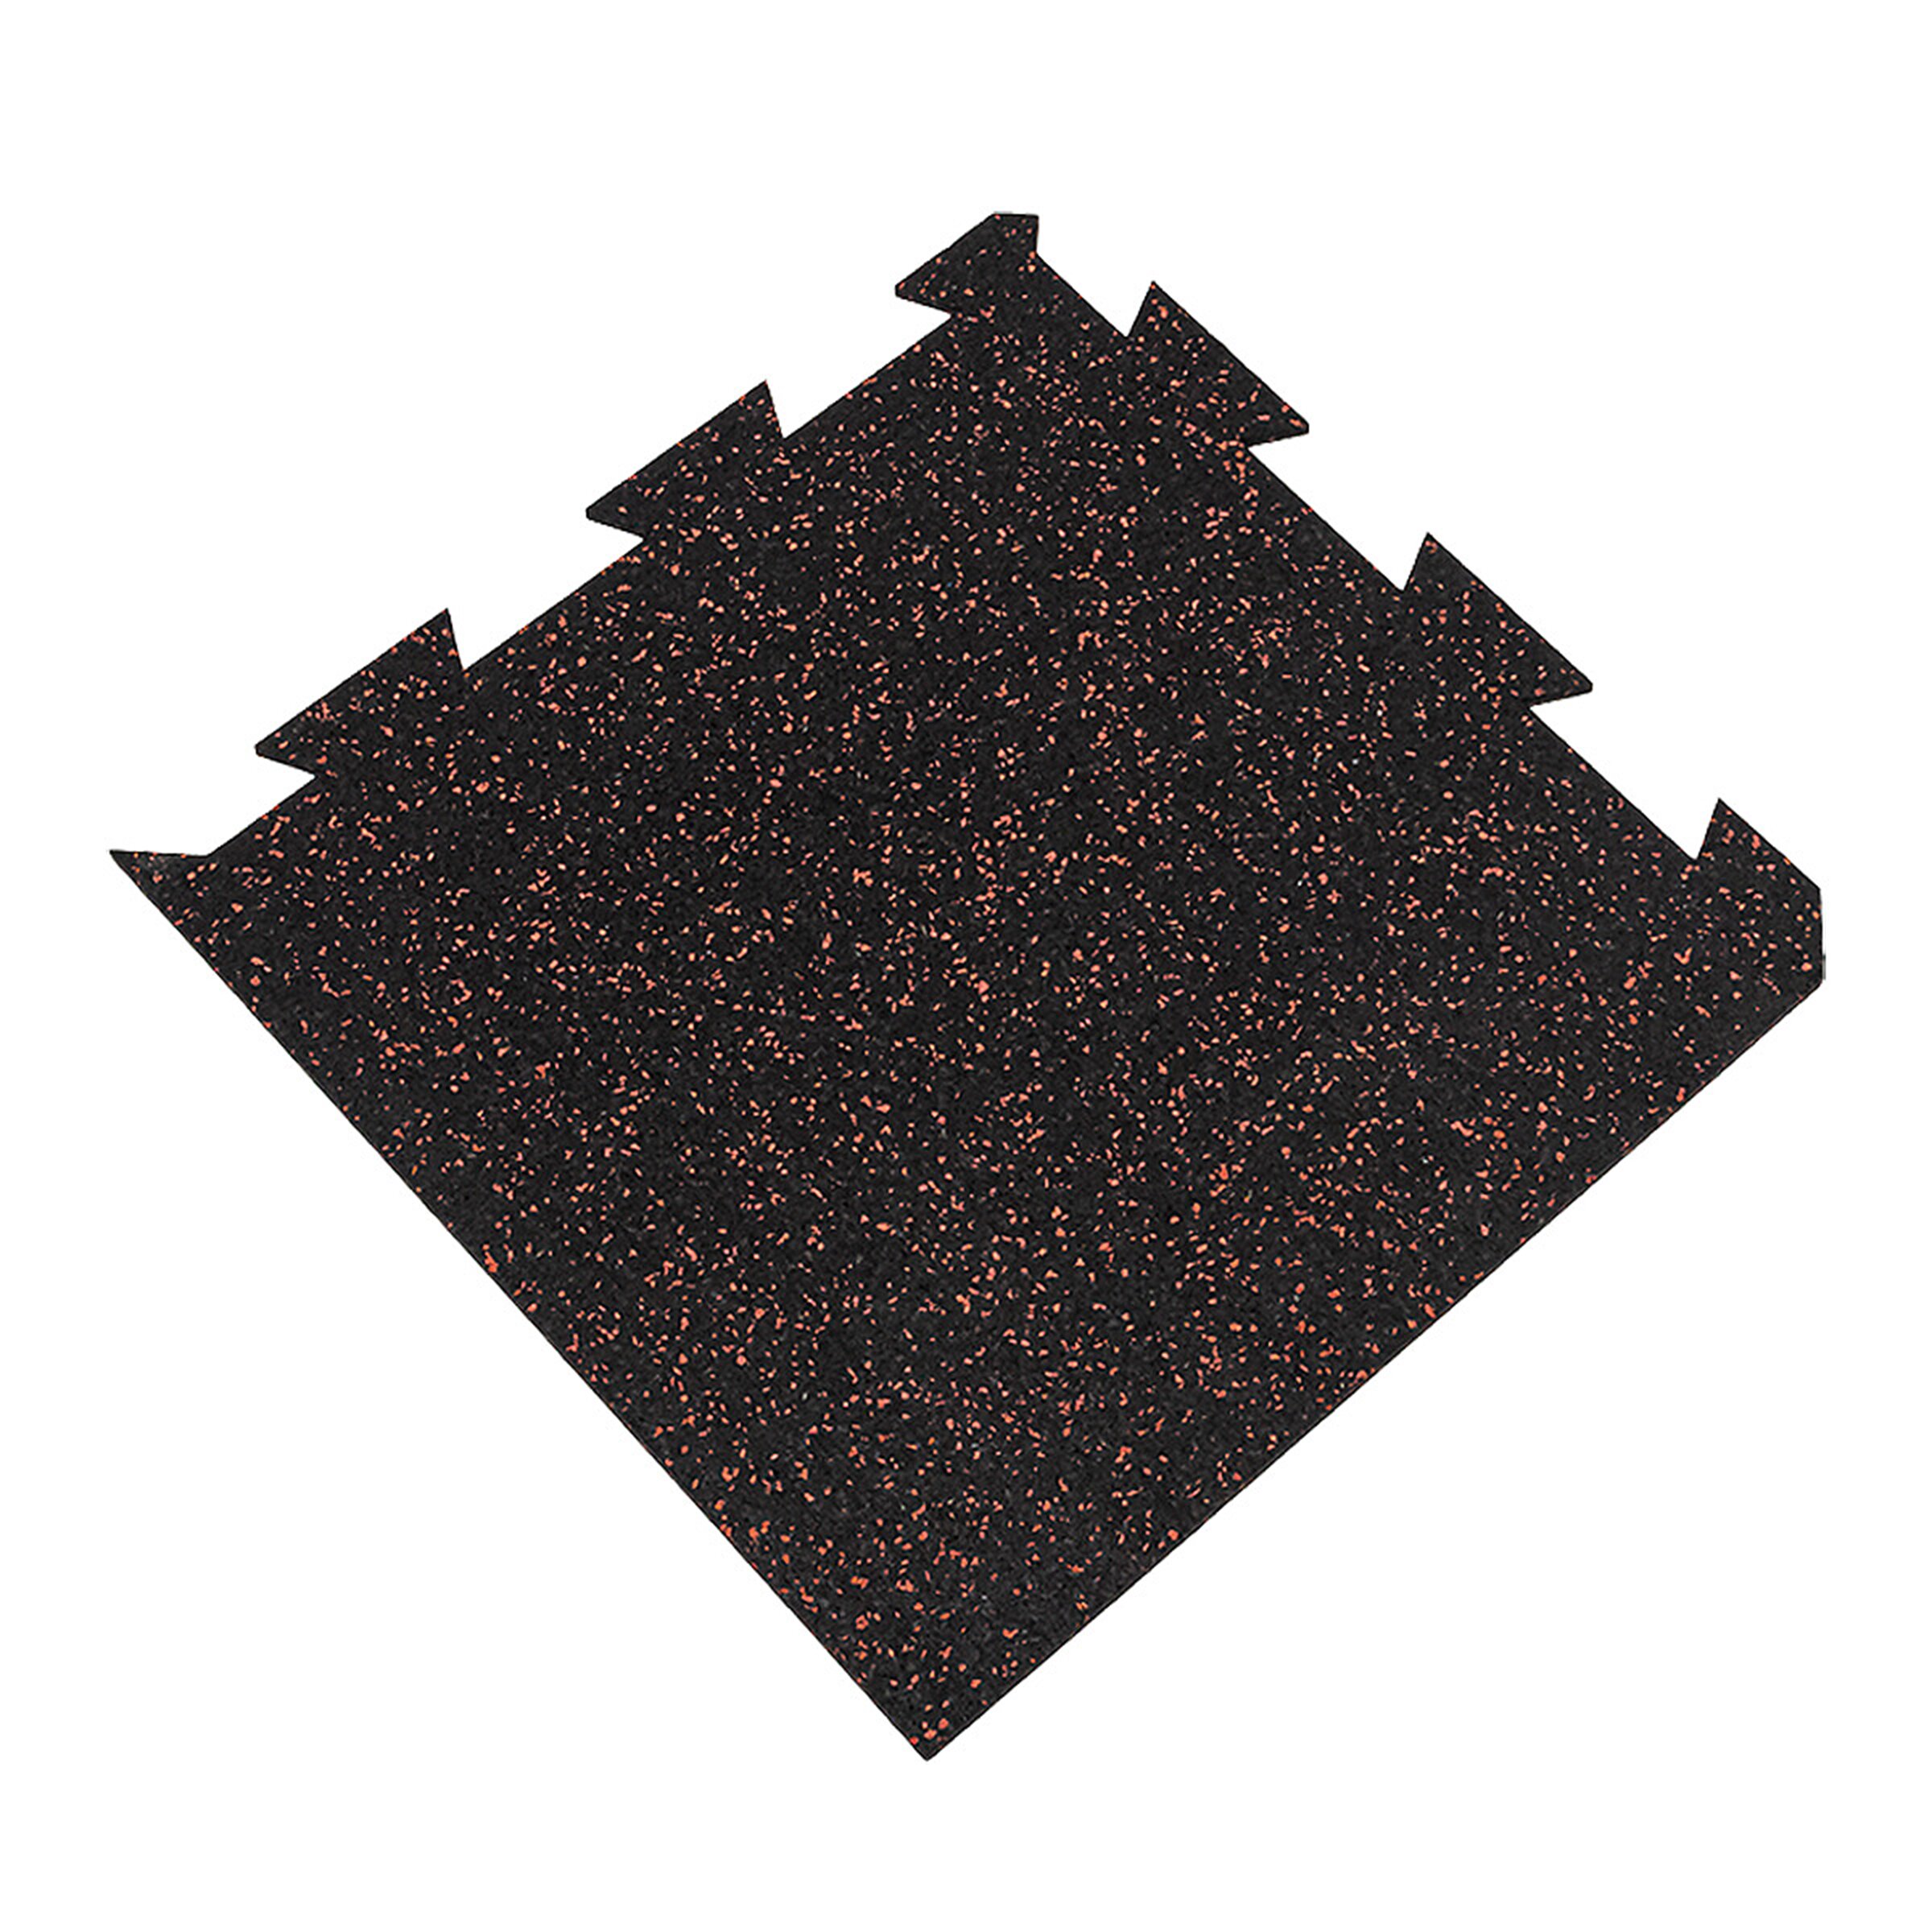 Černo-červená gumová modulová puzzle dlažba FLOMA FitFlo SF1050 - délka 50 cm, šířka 50 cm, výška 1 cm